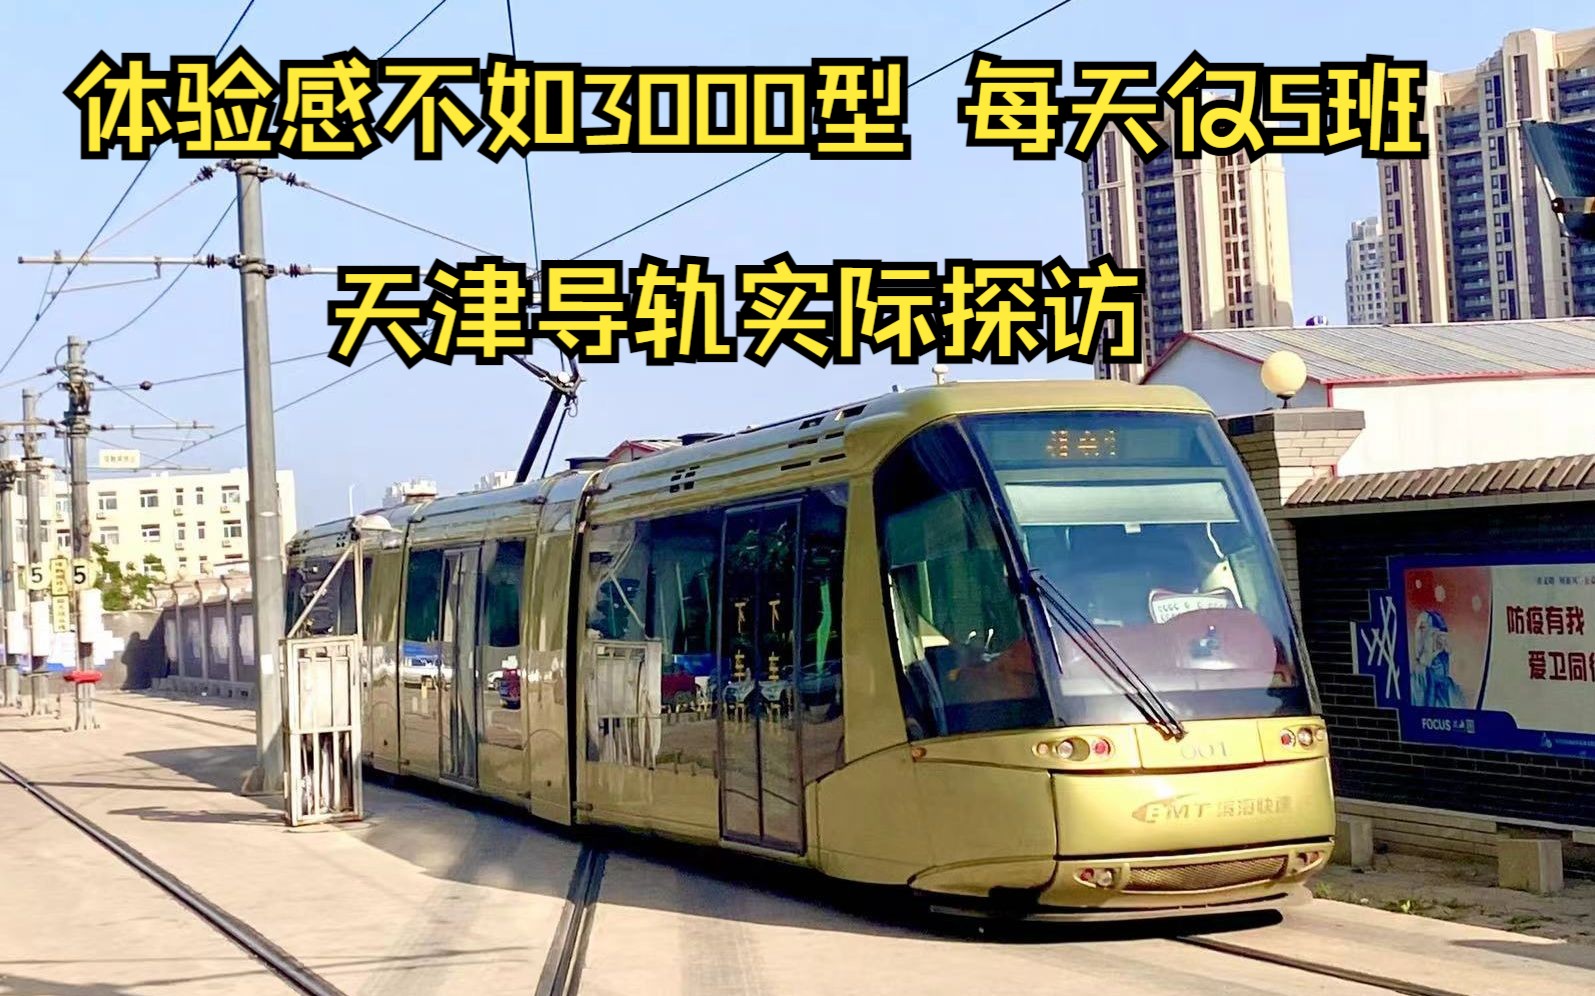 【天津导轨电车】全天仅5班的我国首条商用导轨电车乘坐体验感竟不如3000型？又是什么原因导致的呢？